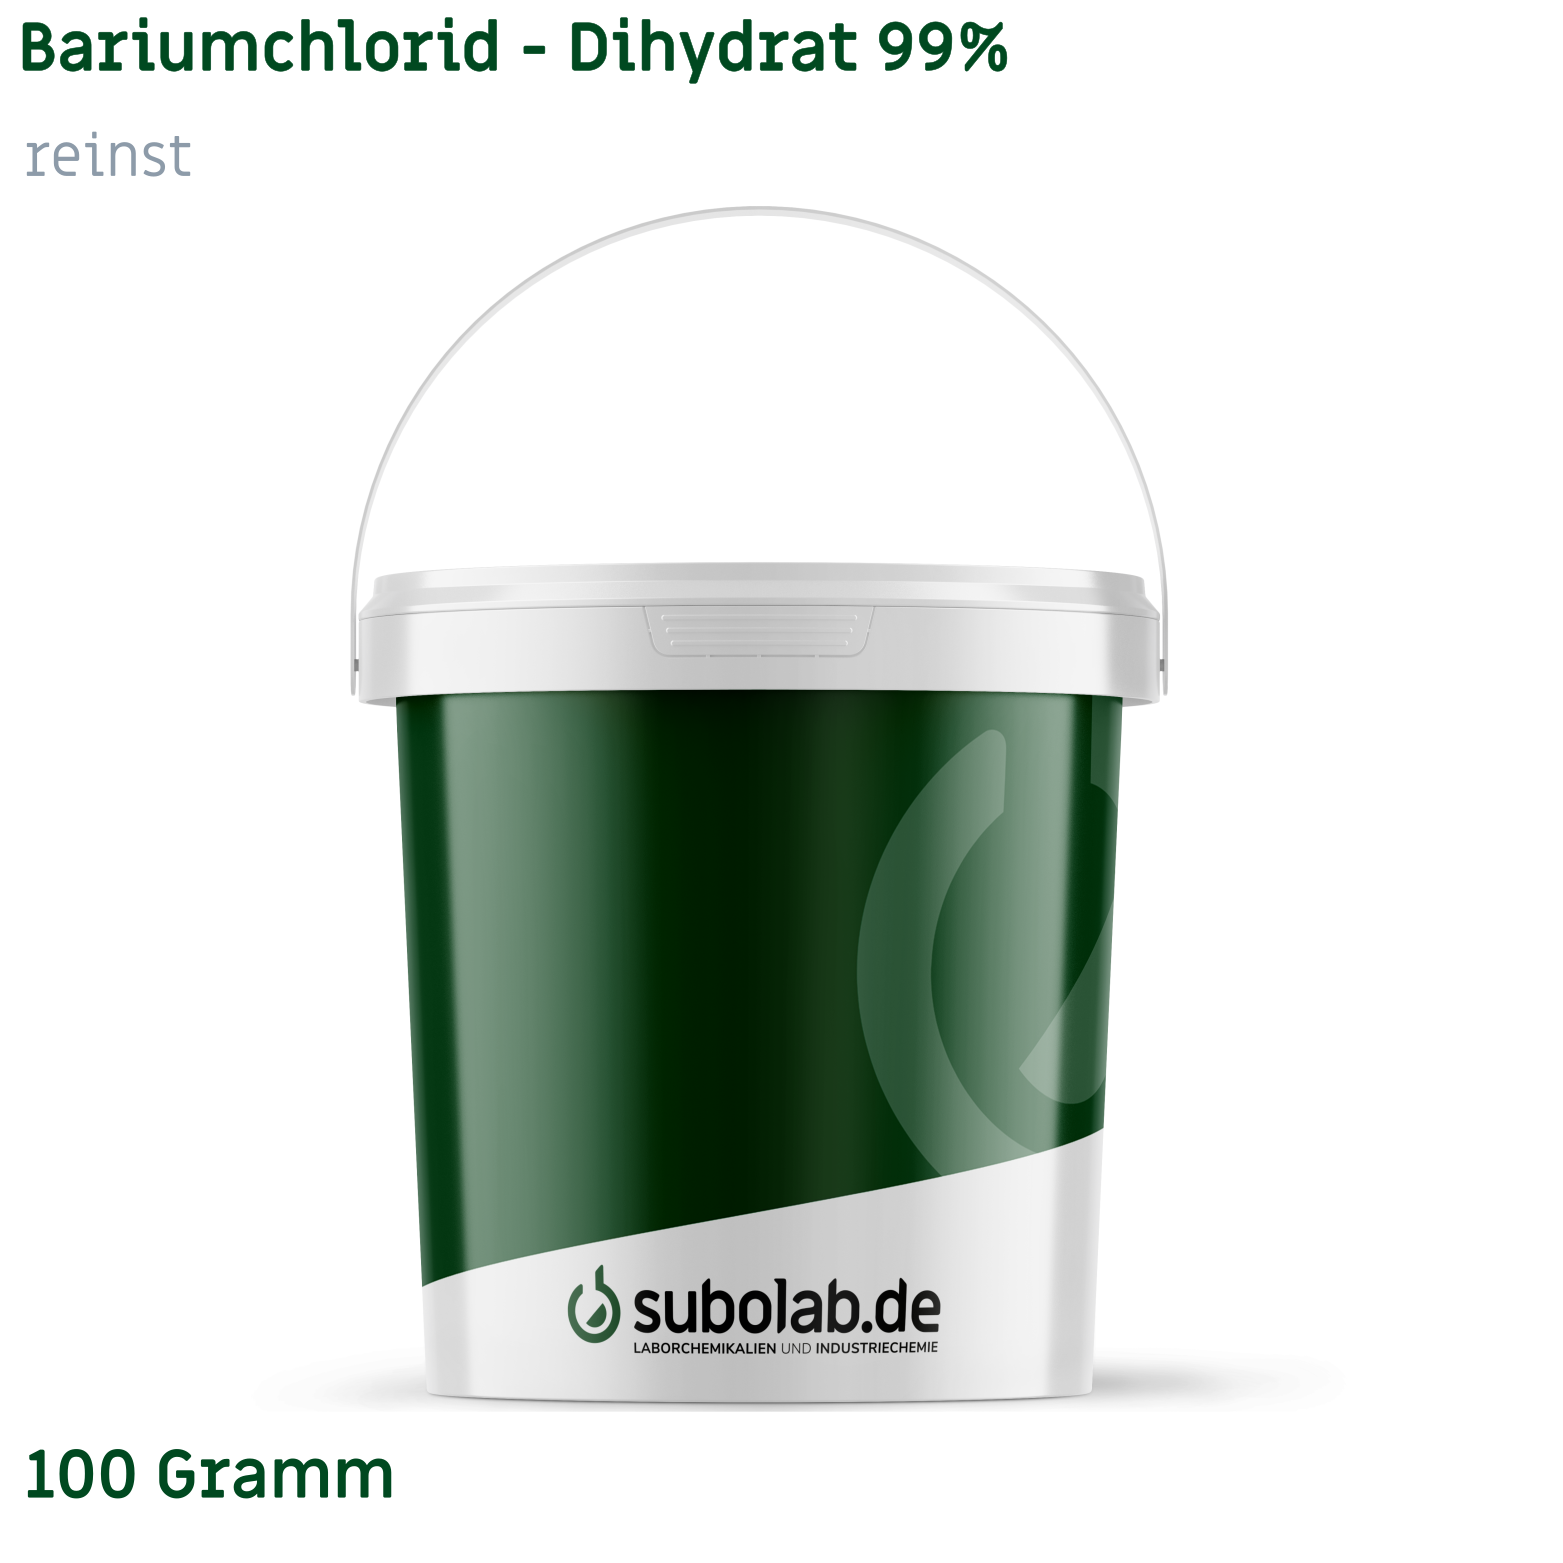 Bild von Bariumchlorid - Dihydrat 99% reinst (100 Gramm)